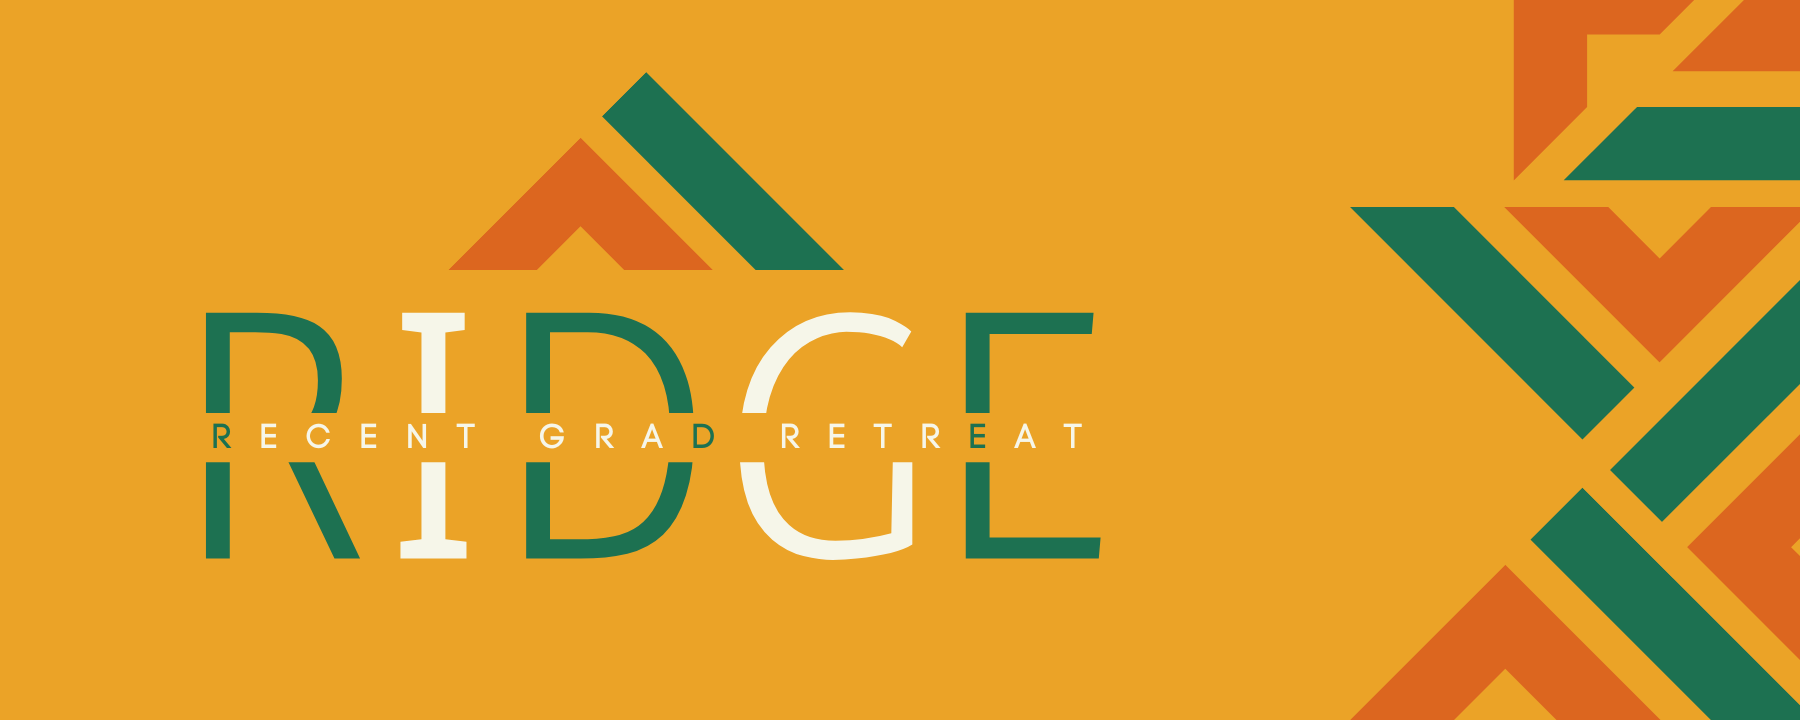 Ridge Retreat for Recent Graduates